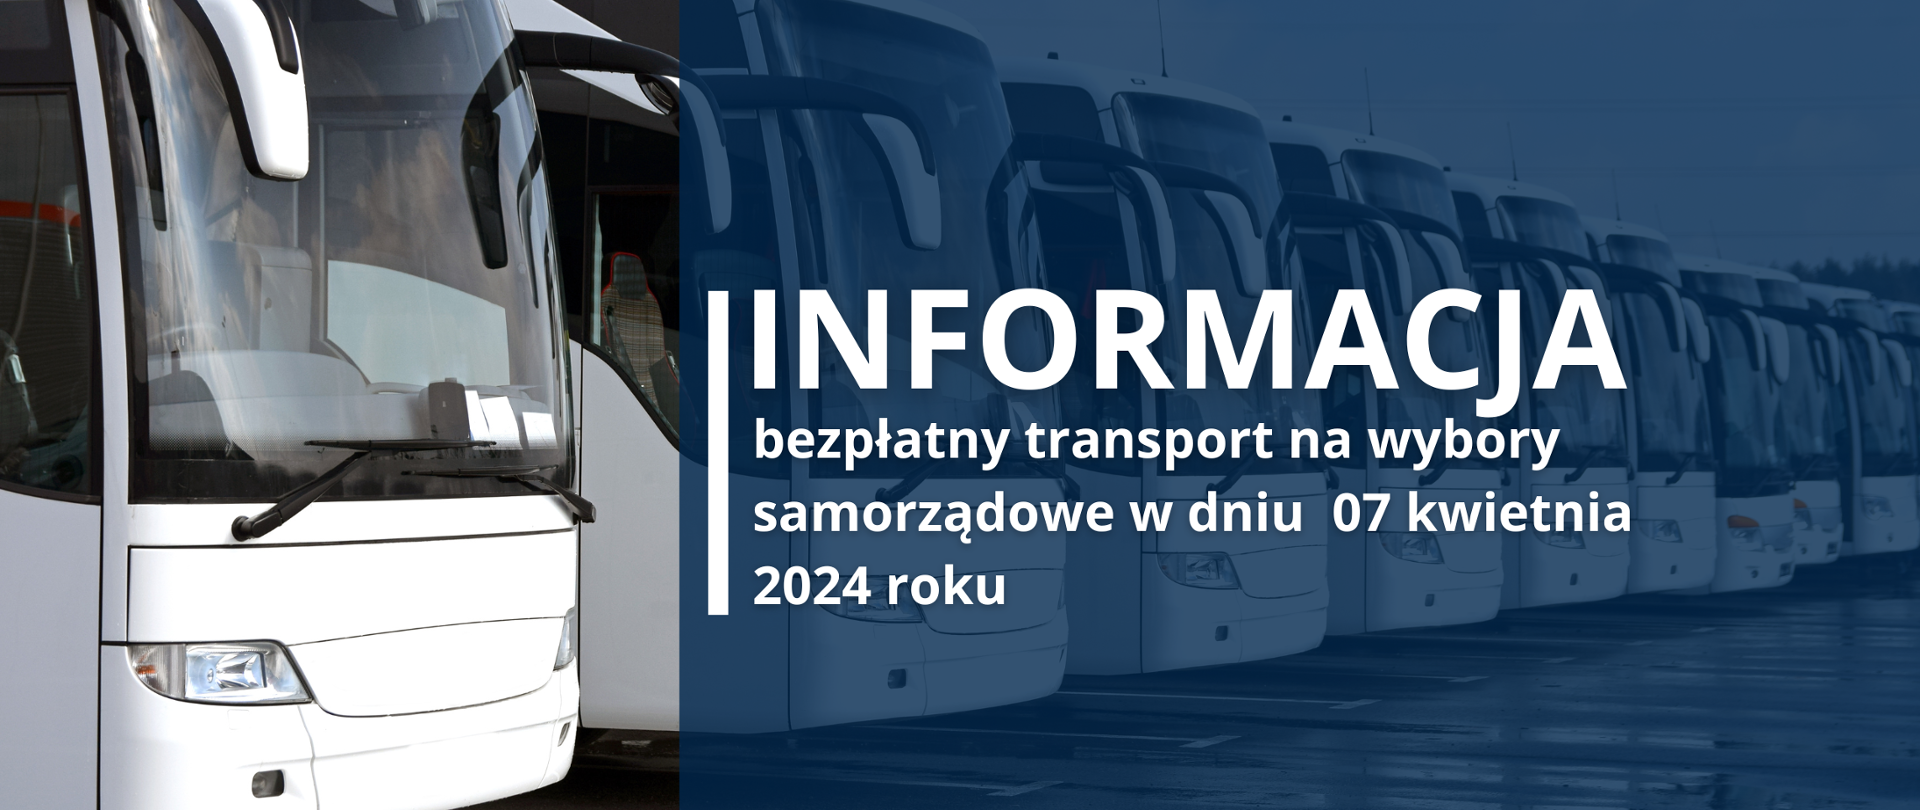 W tle szereg autobusów, na pierwszym planie granatowy kwadrat i tekst: "Informacja bezpłatny transport na wybory samorządowe w dniu 07 kwietnia 2024 roku